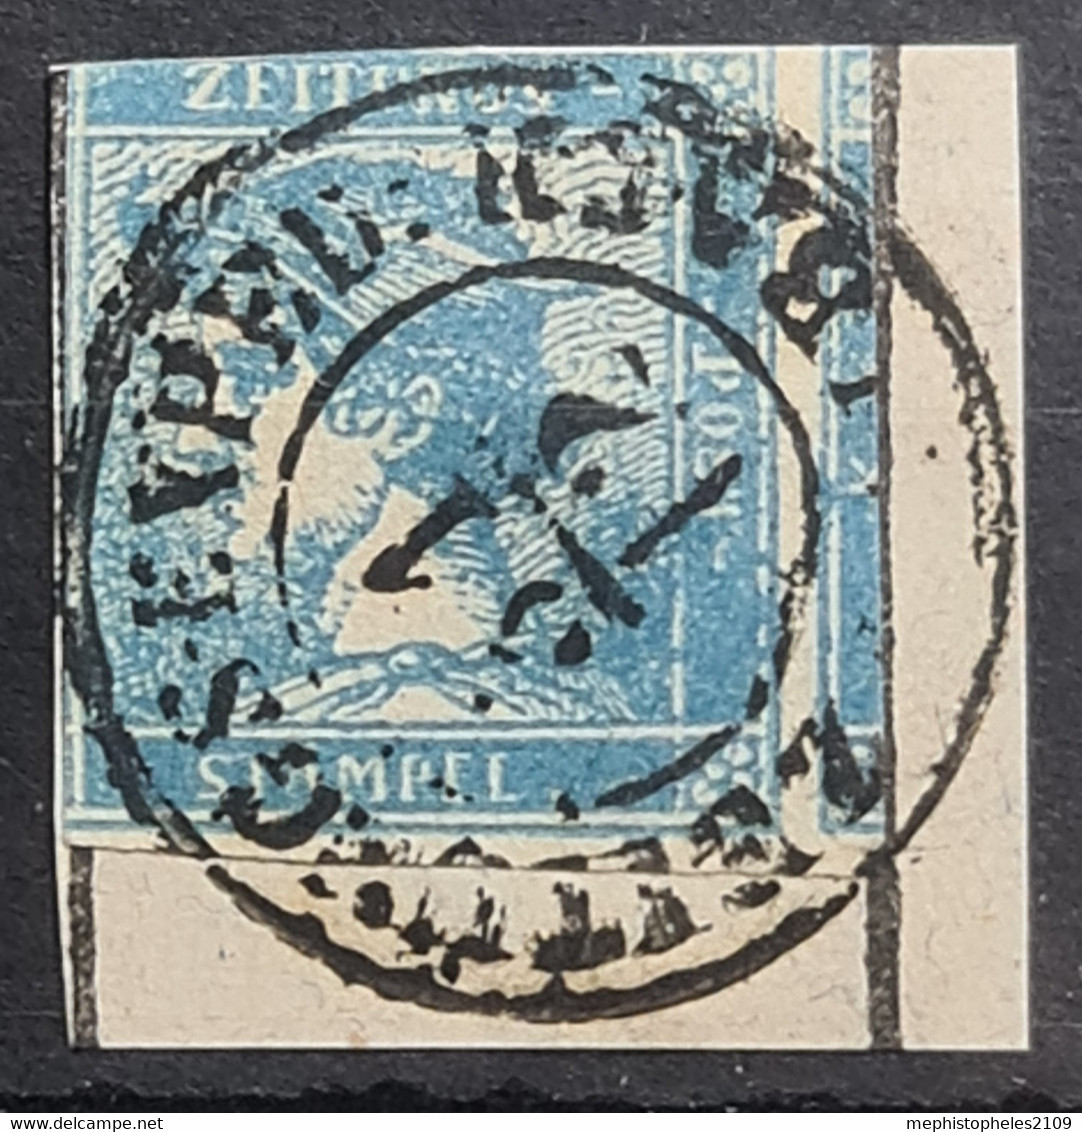 AUSTRIA 1851 - Canceled - ANK 6 - Blauer Merkur - Journaux